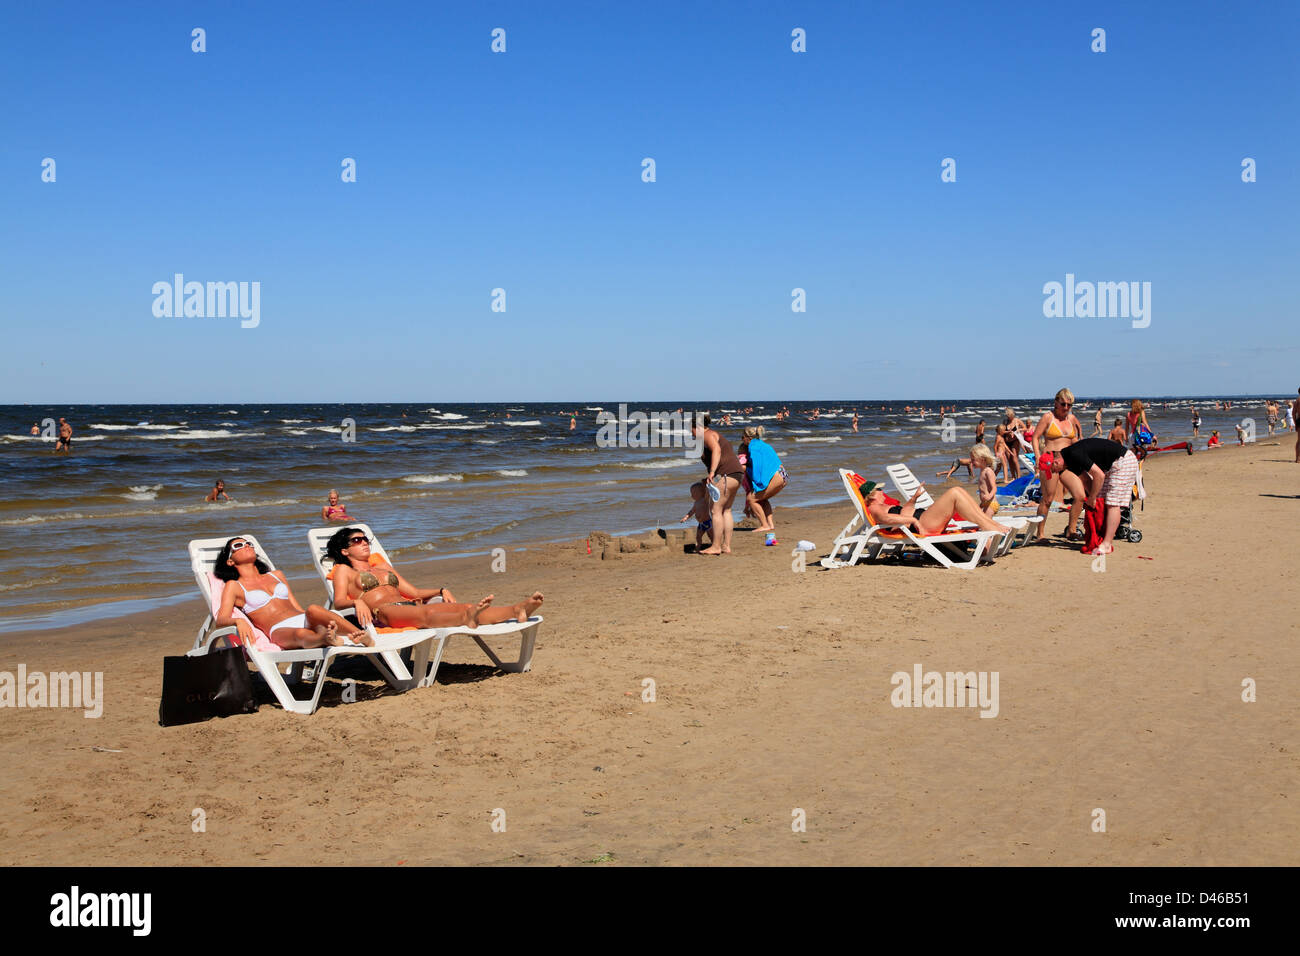 Soleil en majori, Jurmala, plage de la mer baltique, Riga, Lettonie Banque D'Images